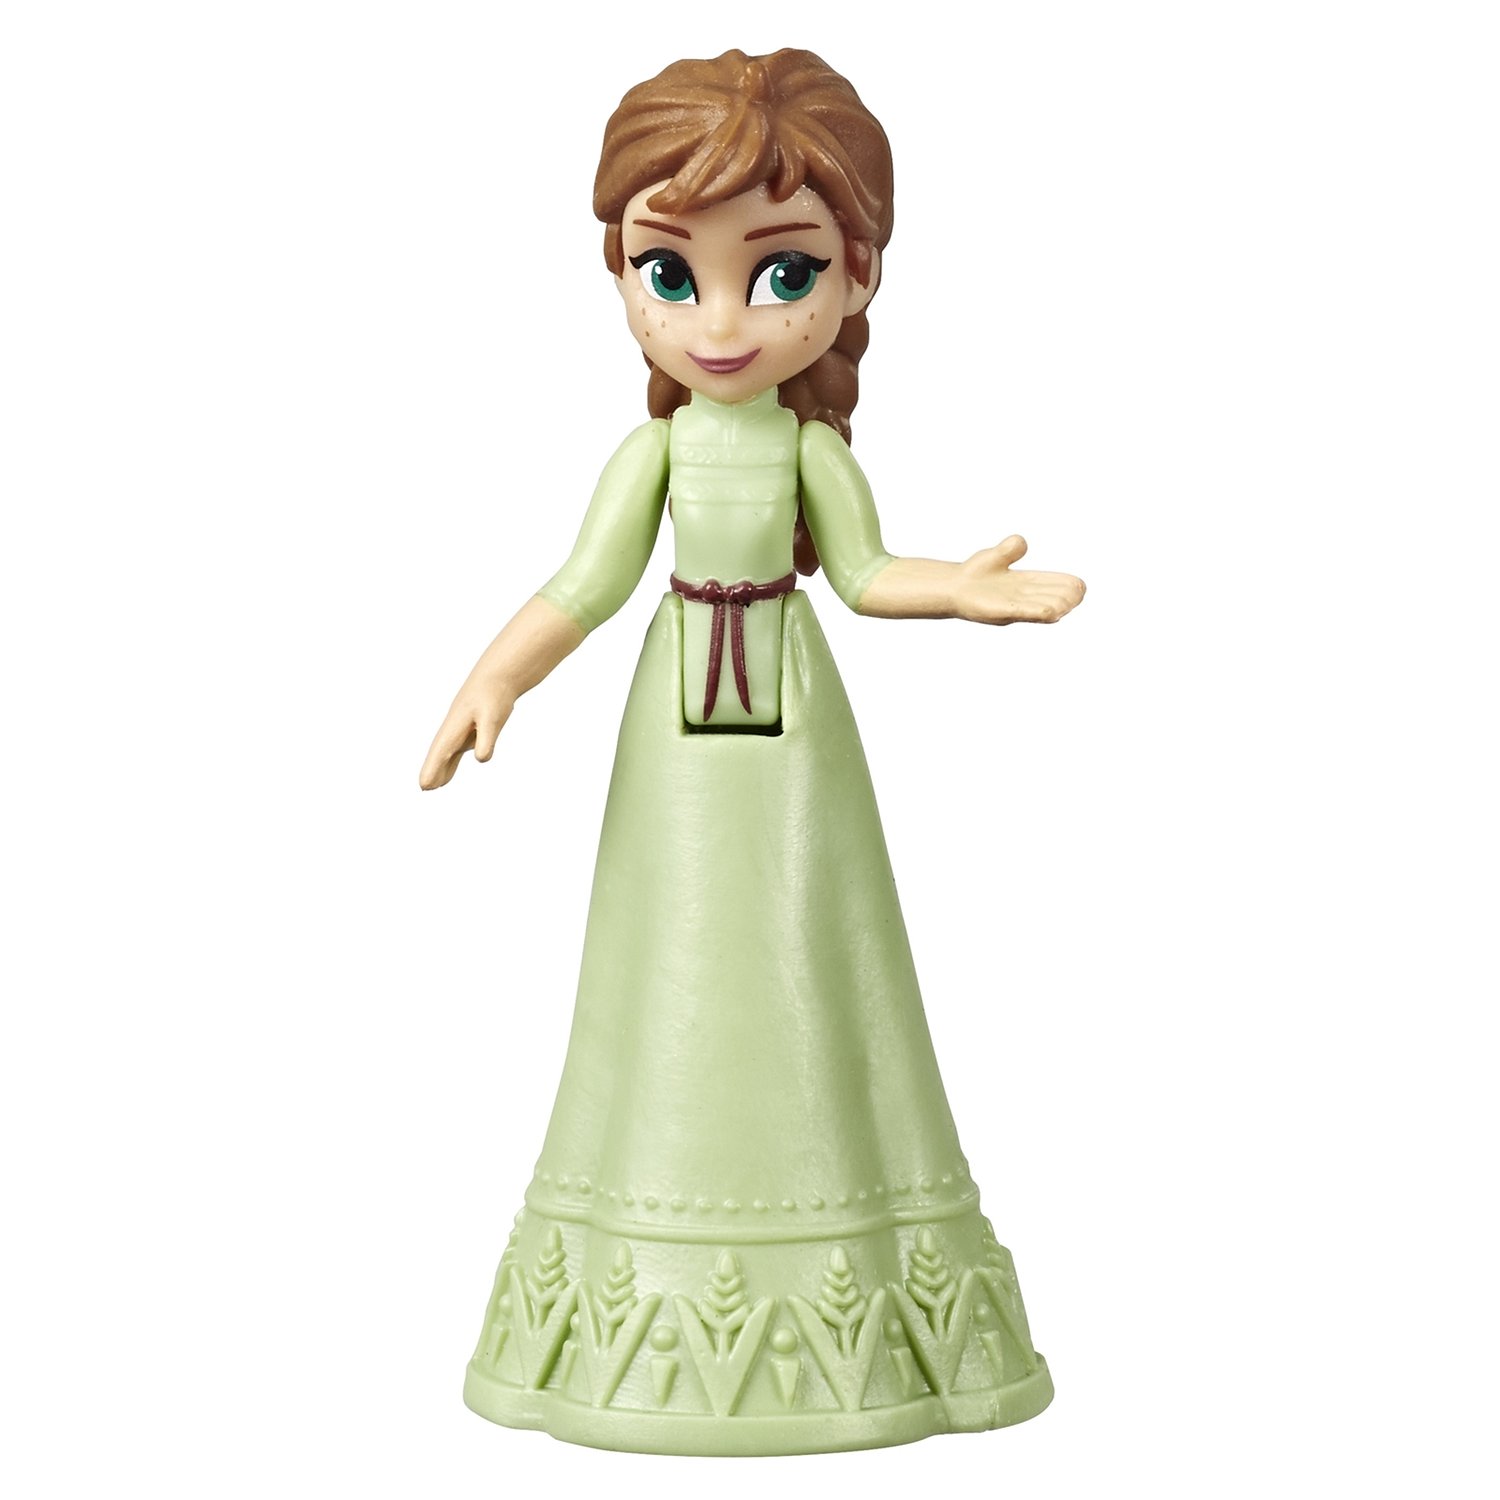  Мини-кукла Disney Princess - Холодное сердце, в закрытой упаковке   